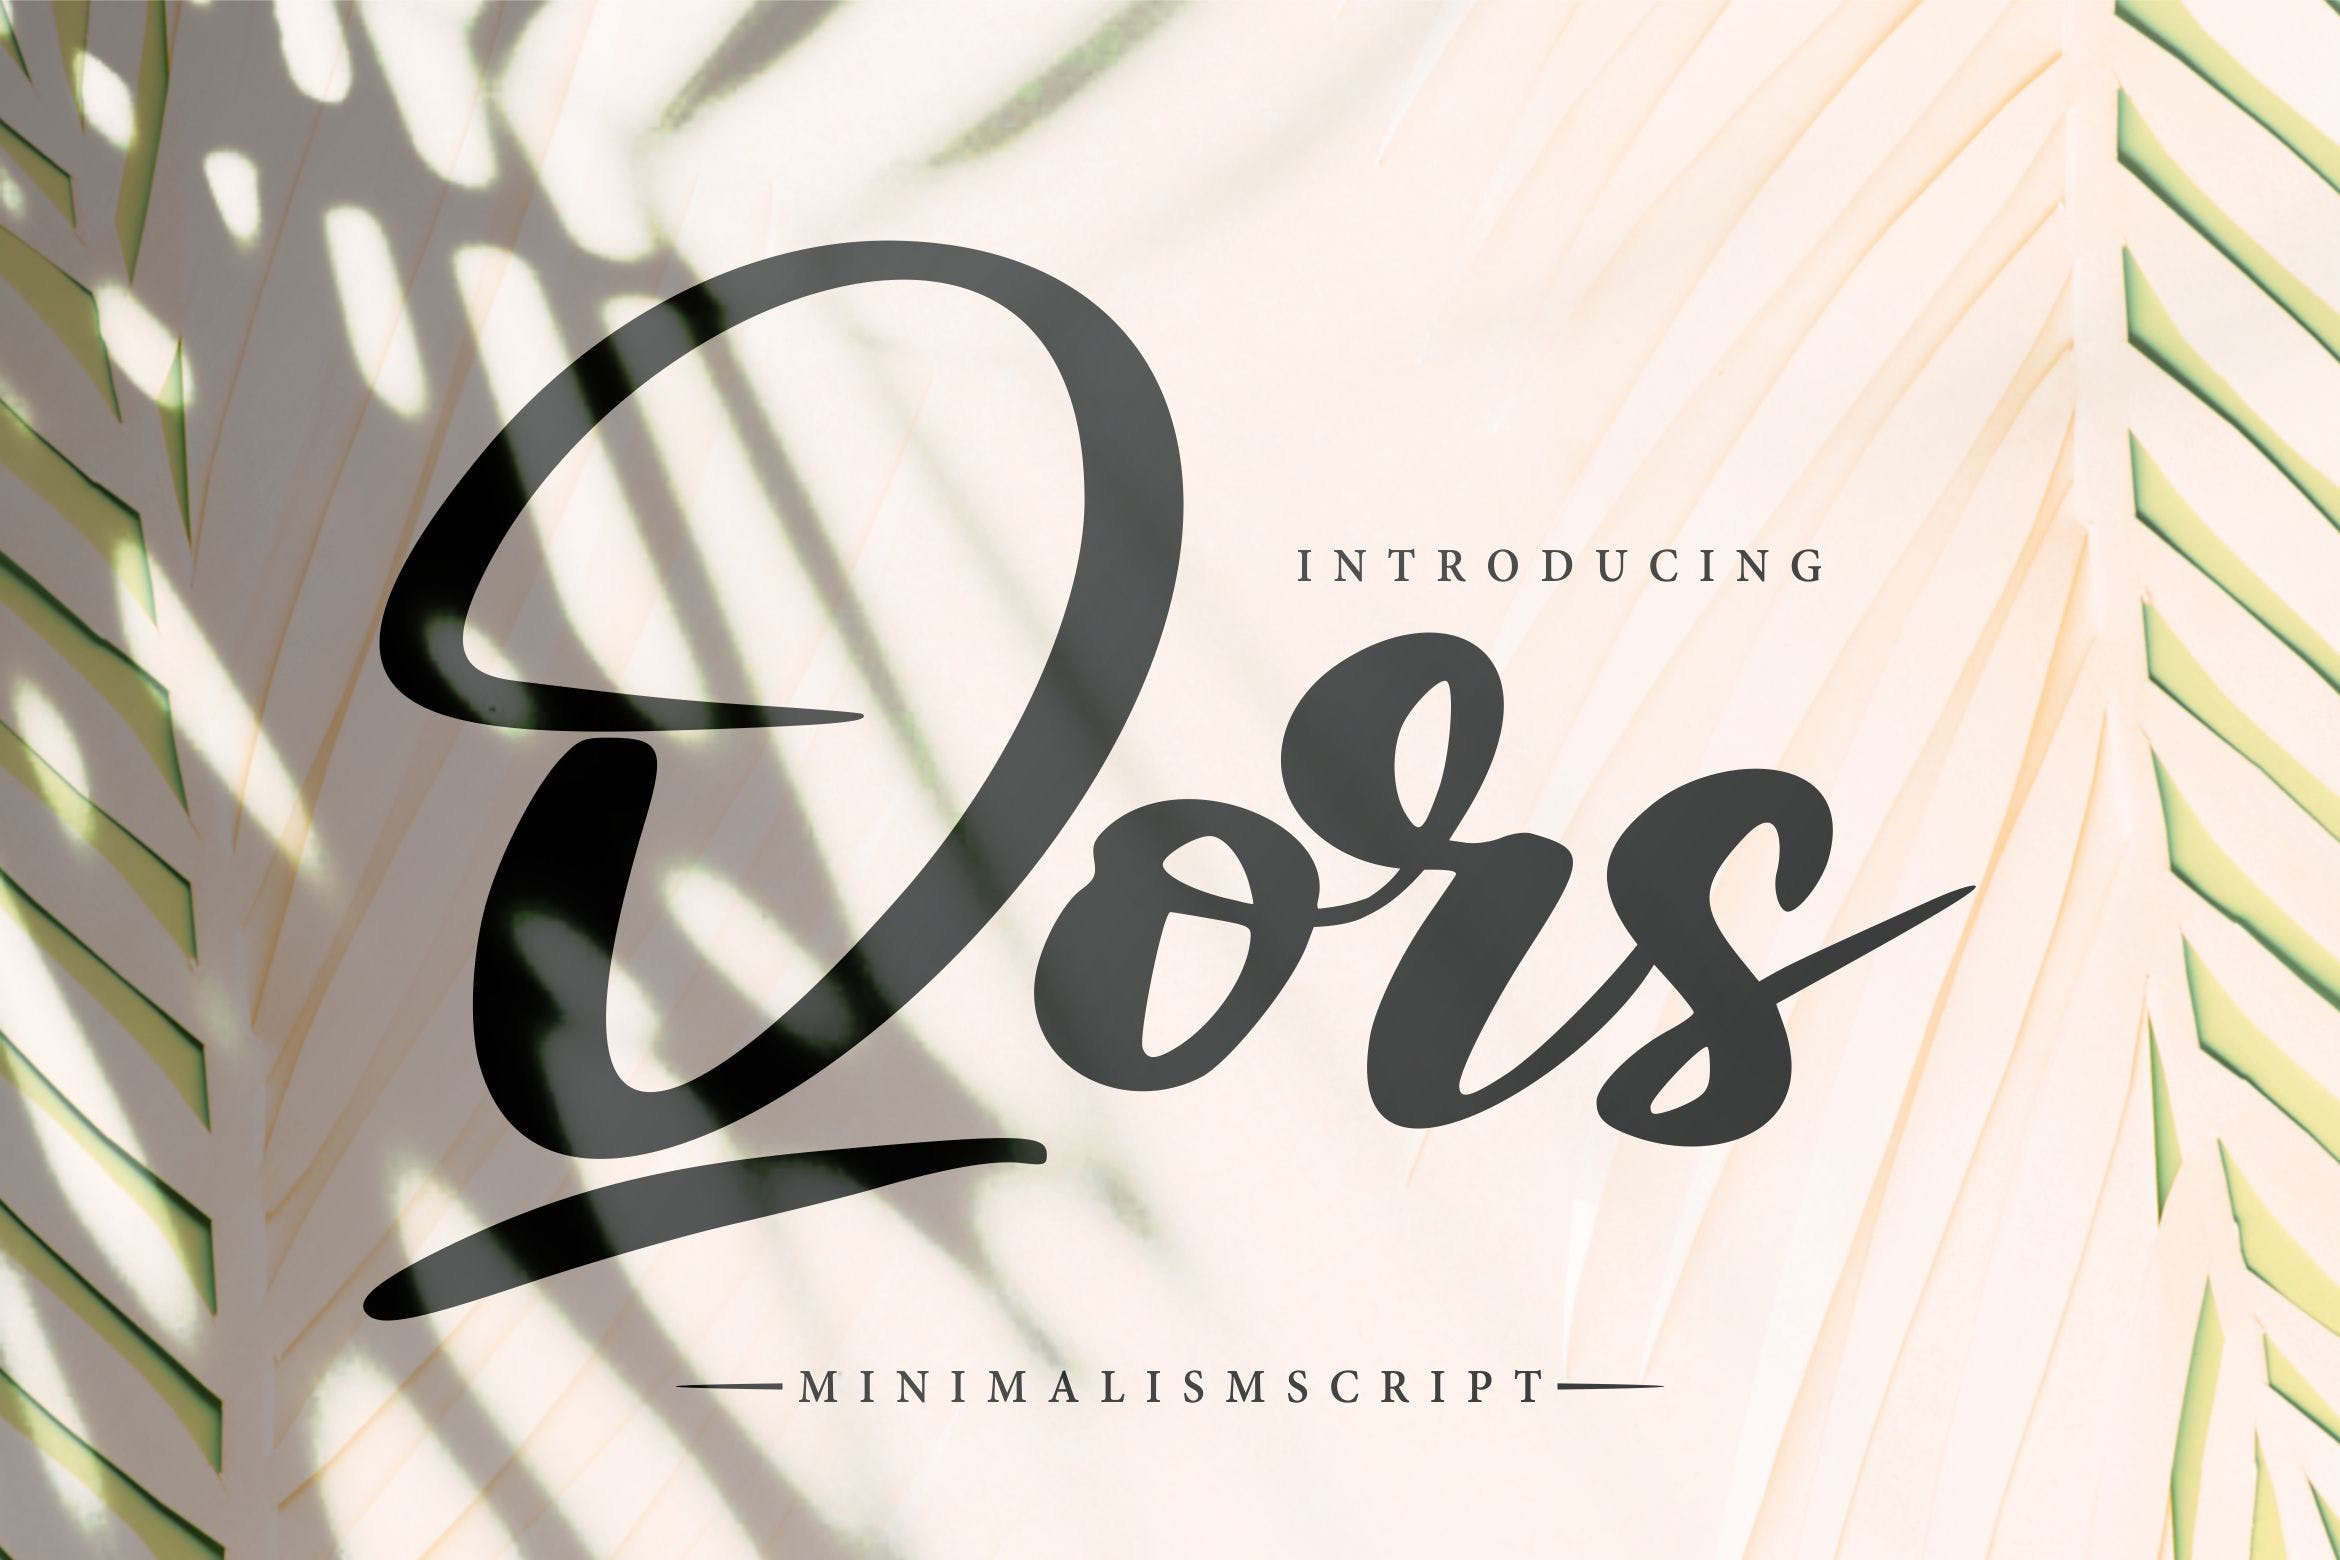 极简主义排版设计风格英文书法字体亿图网易图库精选 Qors | Minimalism Script Font插图